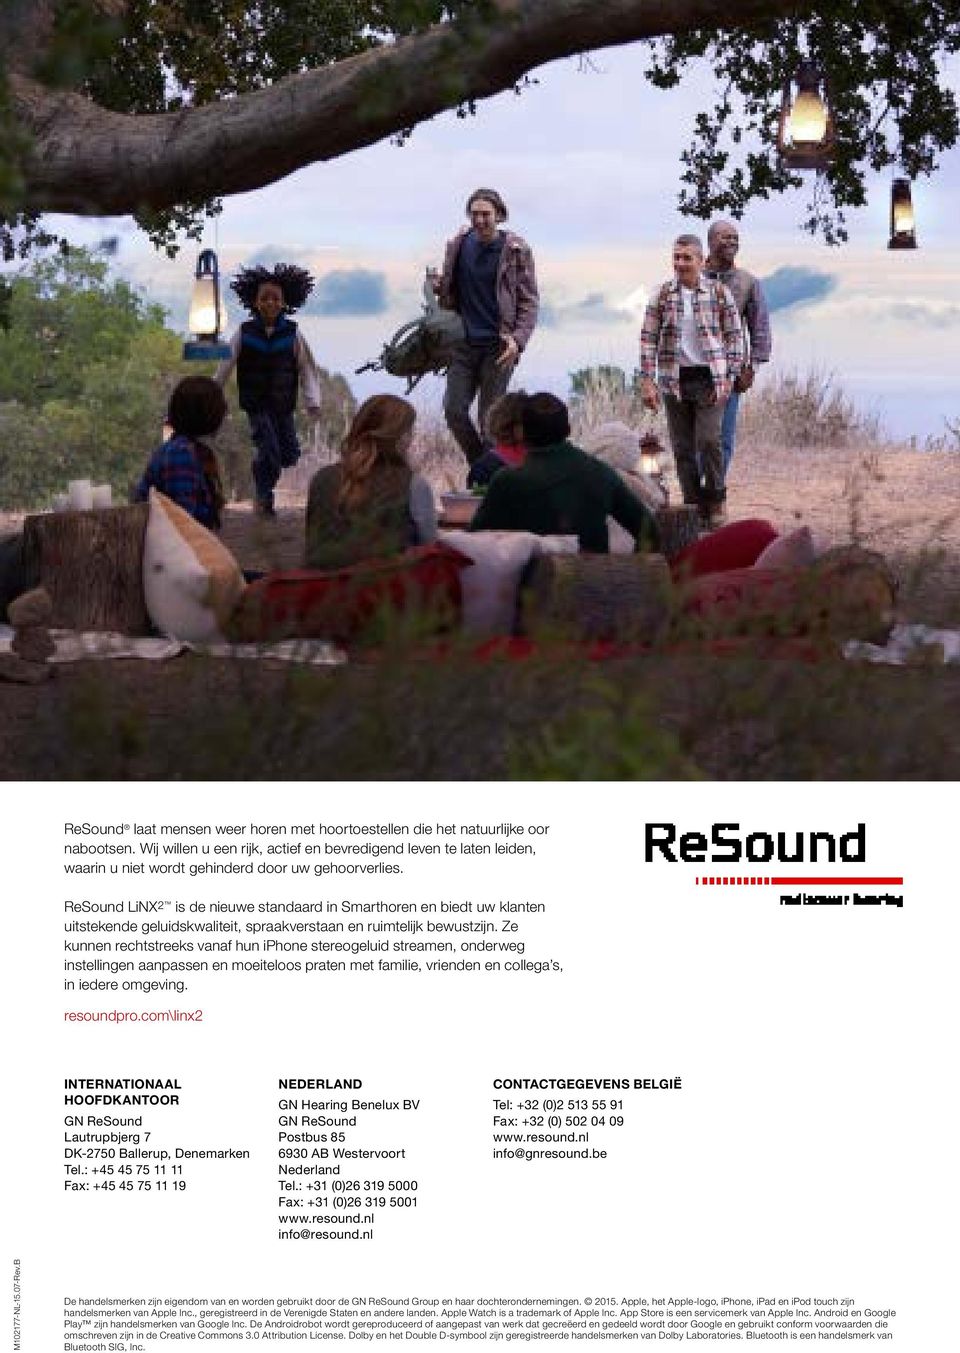 ReSound LiNX 2 is de nieuwe standaard in Smarthoren en biedt uw klanten uitstekende geluidskwaliteit, spraakverstaan en ruimtelijk bewustzijn.